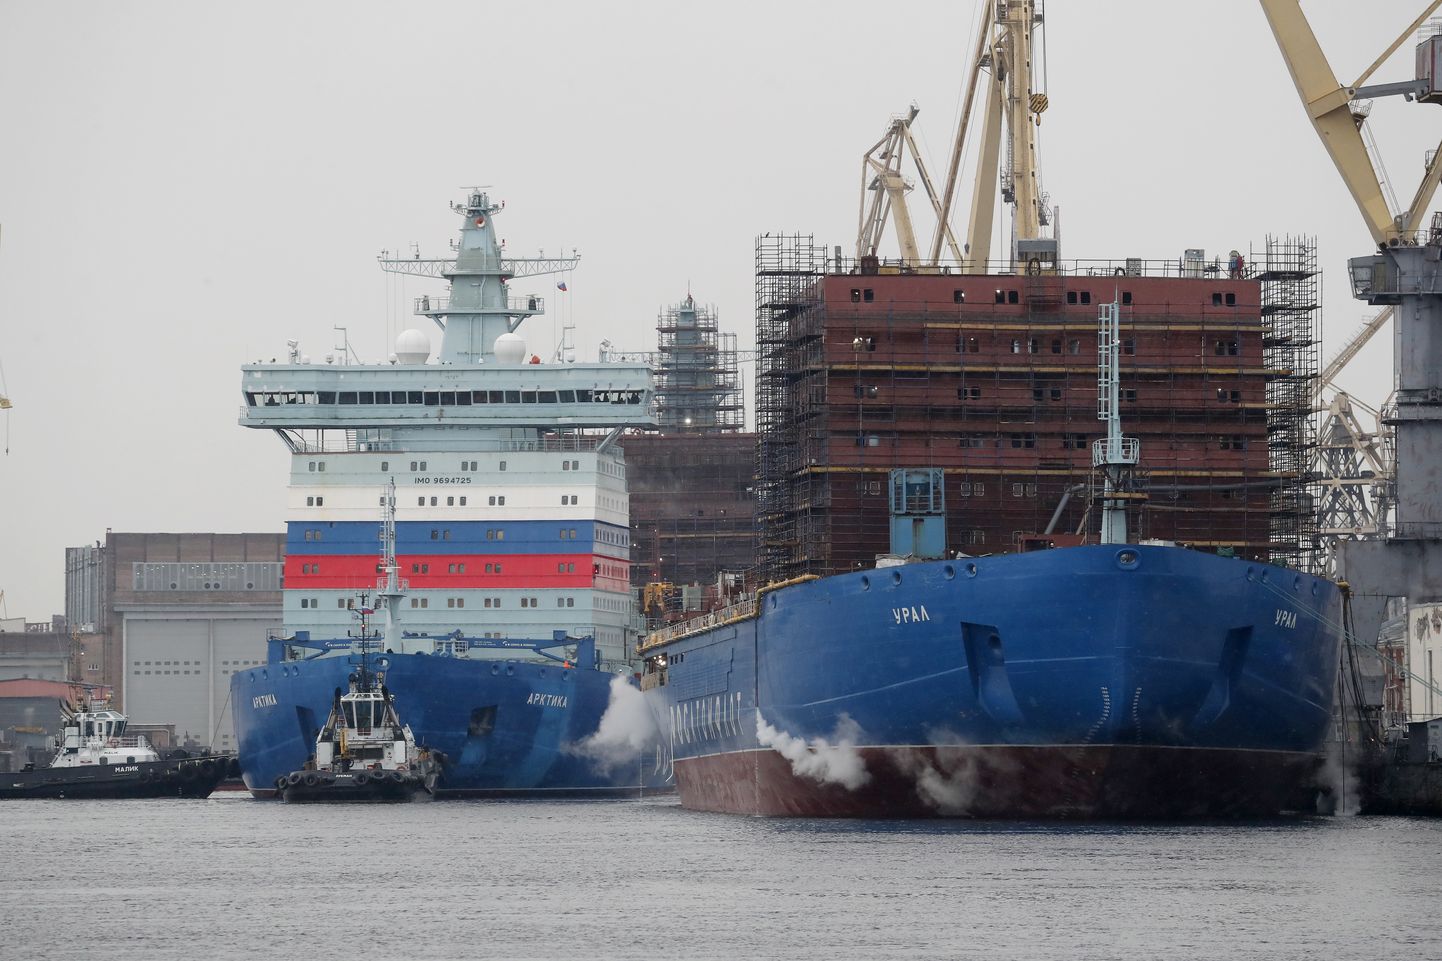 Vene jäälõhkujate laevastikku kuuluv maailma suurim jäälõhkuja Arktika (vasakul) laupäeval Peterburis.